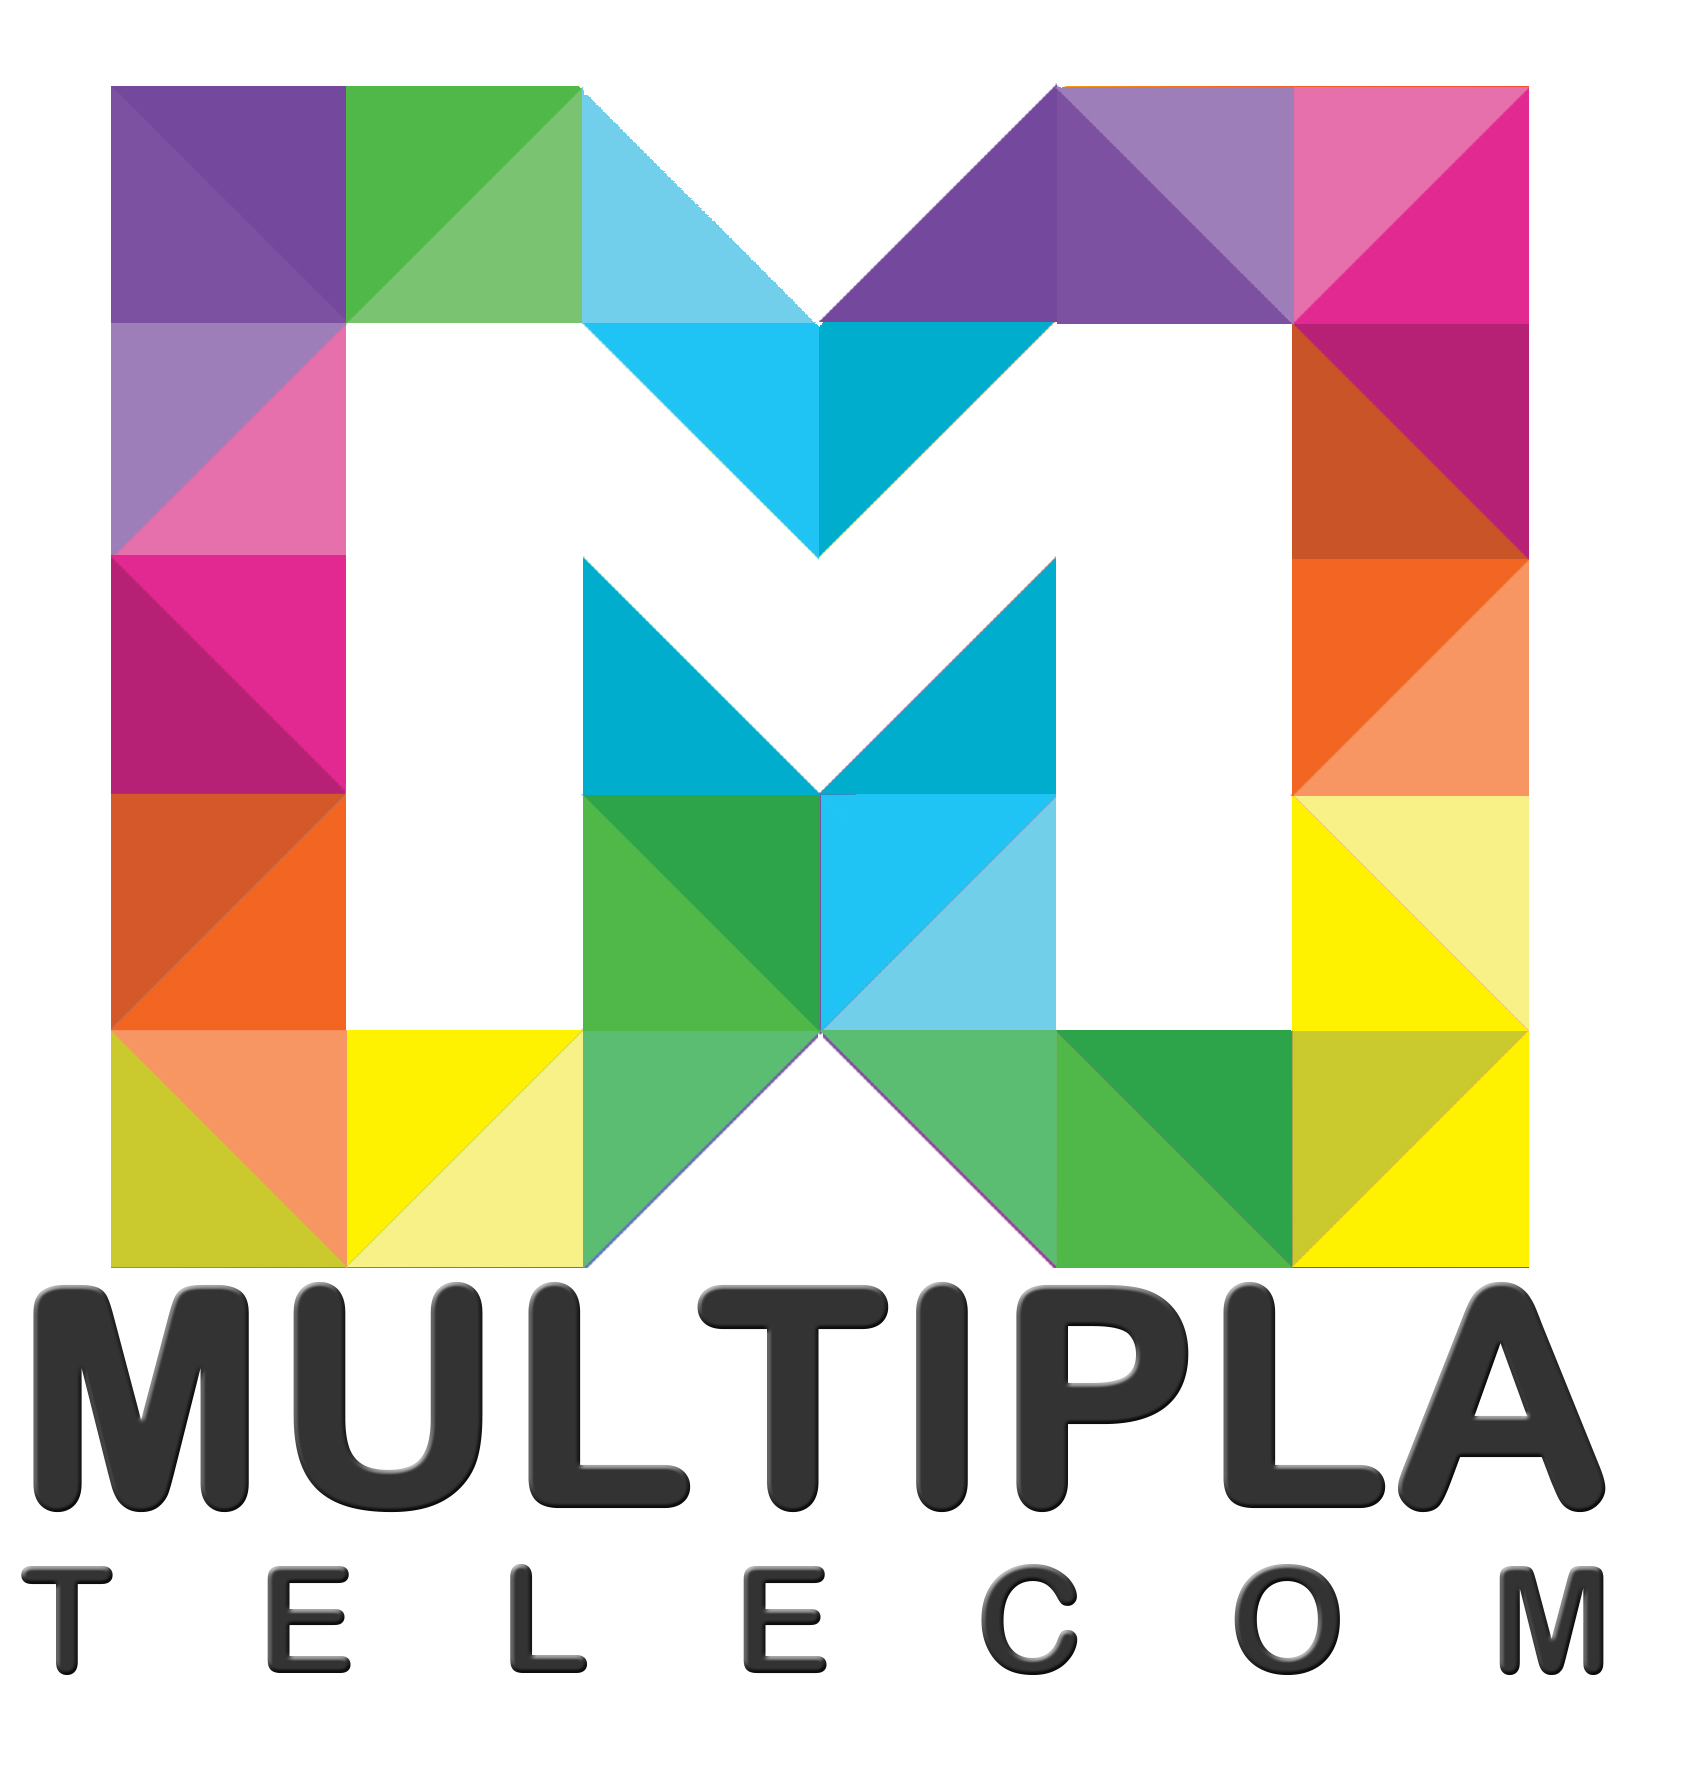 UOL Logo / Telecommunications /